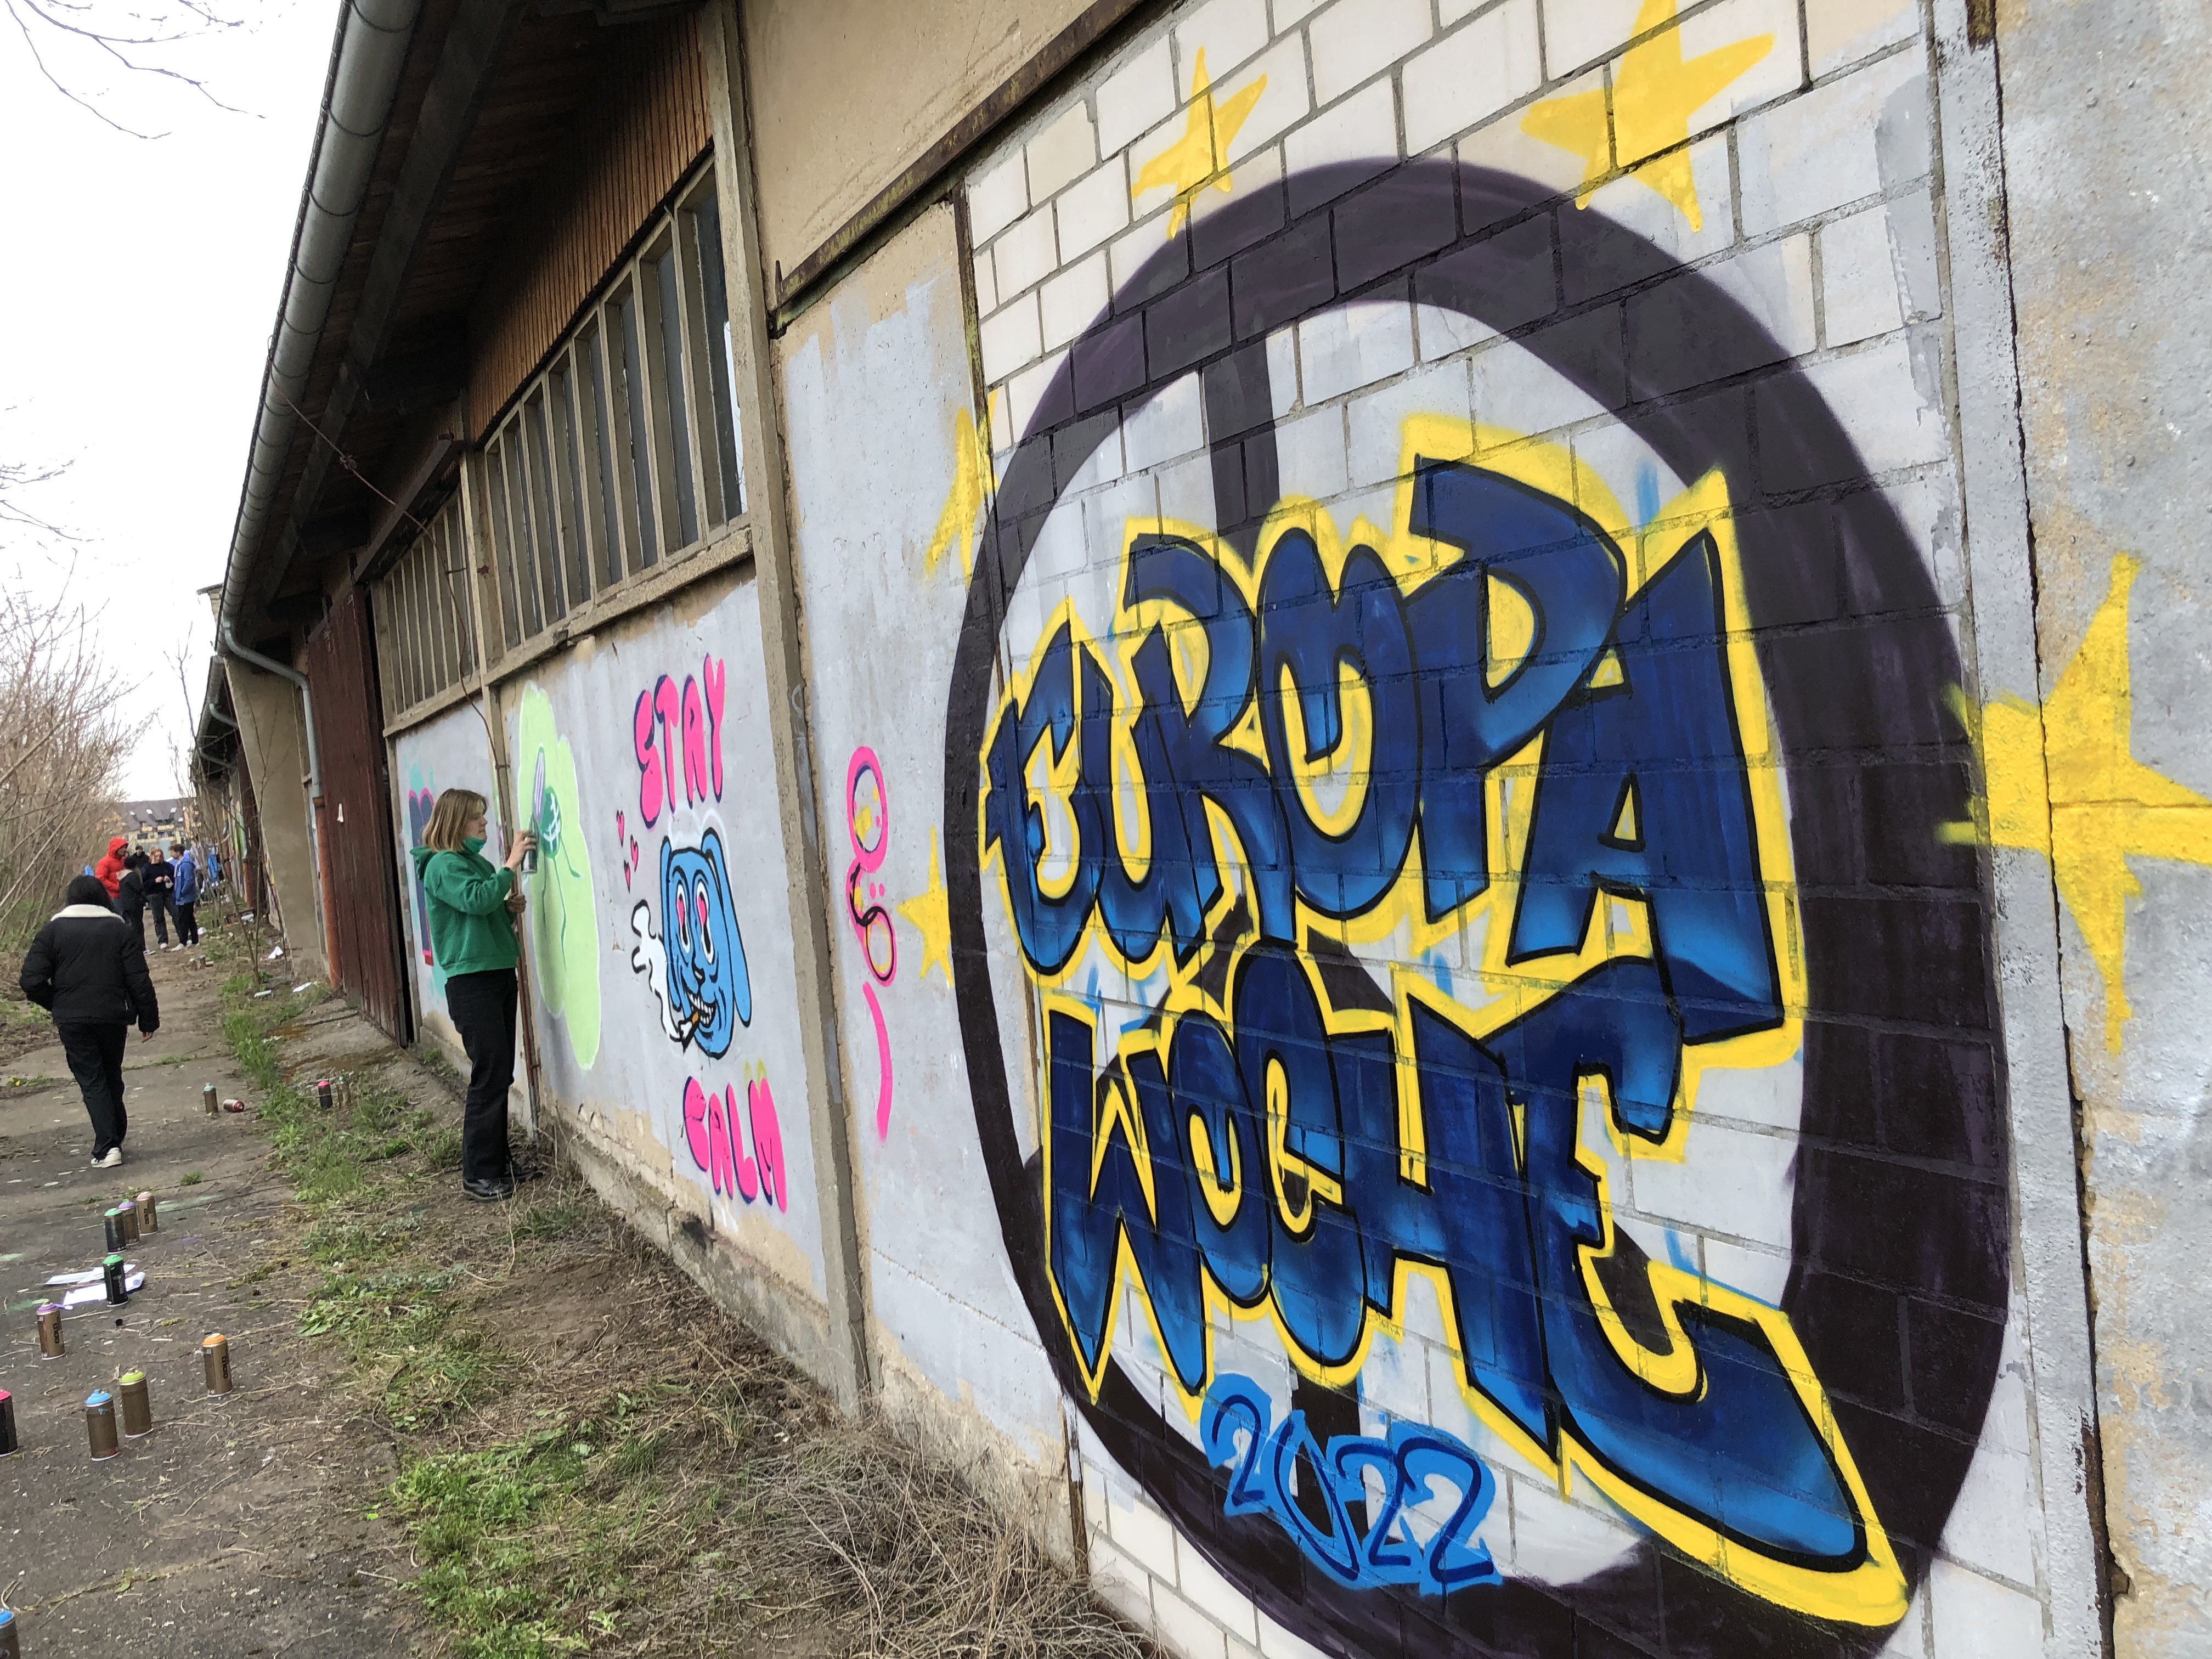 "Europawoche" steht in Blau und Gelb gesprüht an einer Wand. Im Hintergrund sind mehr Personen zu sehen, die ebenfalls etwas an die Wand sprühen.